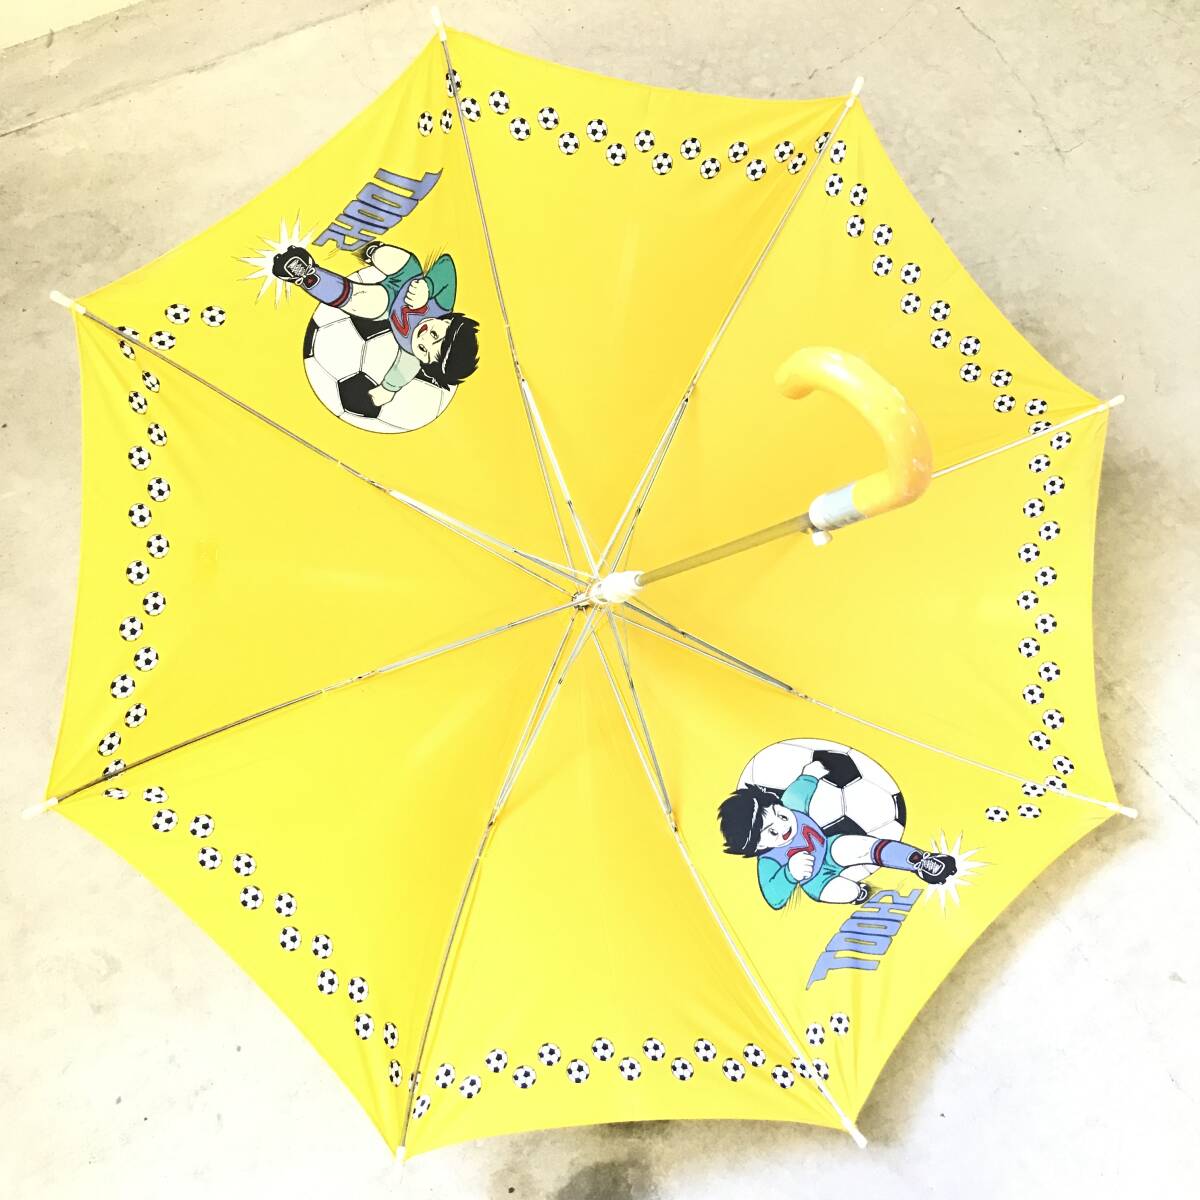 # футбол зонт непромокаемая одежда зонт от дождя зонт детский Kids желтый цвет герой нейлон 100% аниме .8шт.@ хранение товар текущее состояние товар #C30282